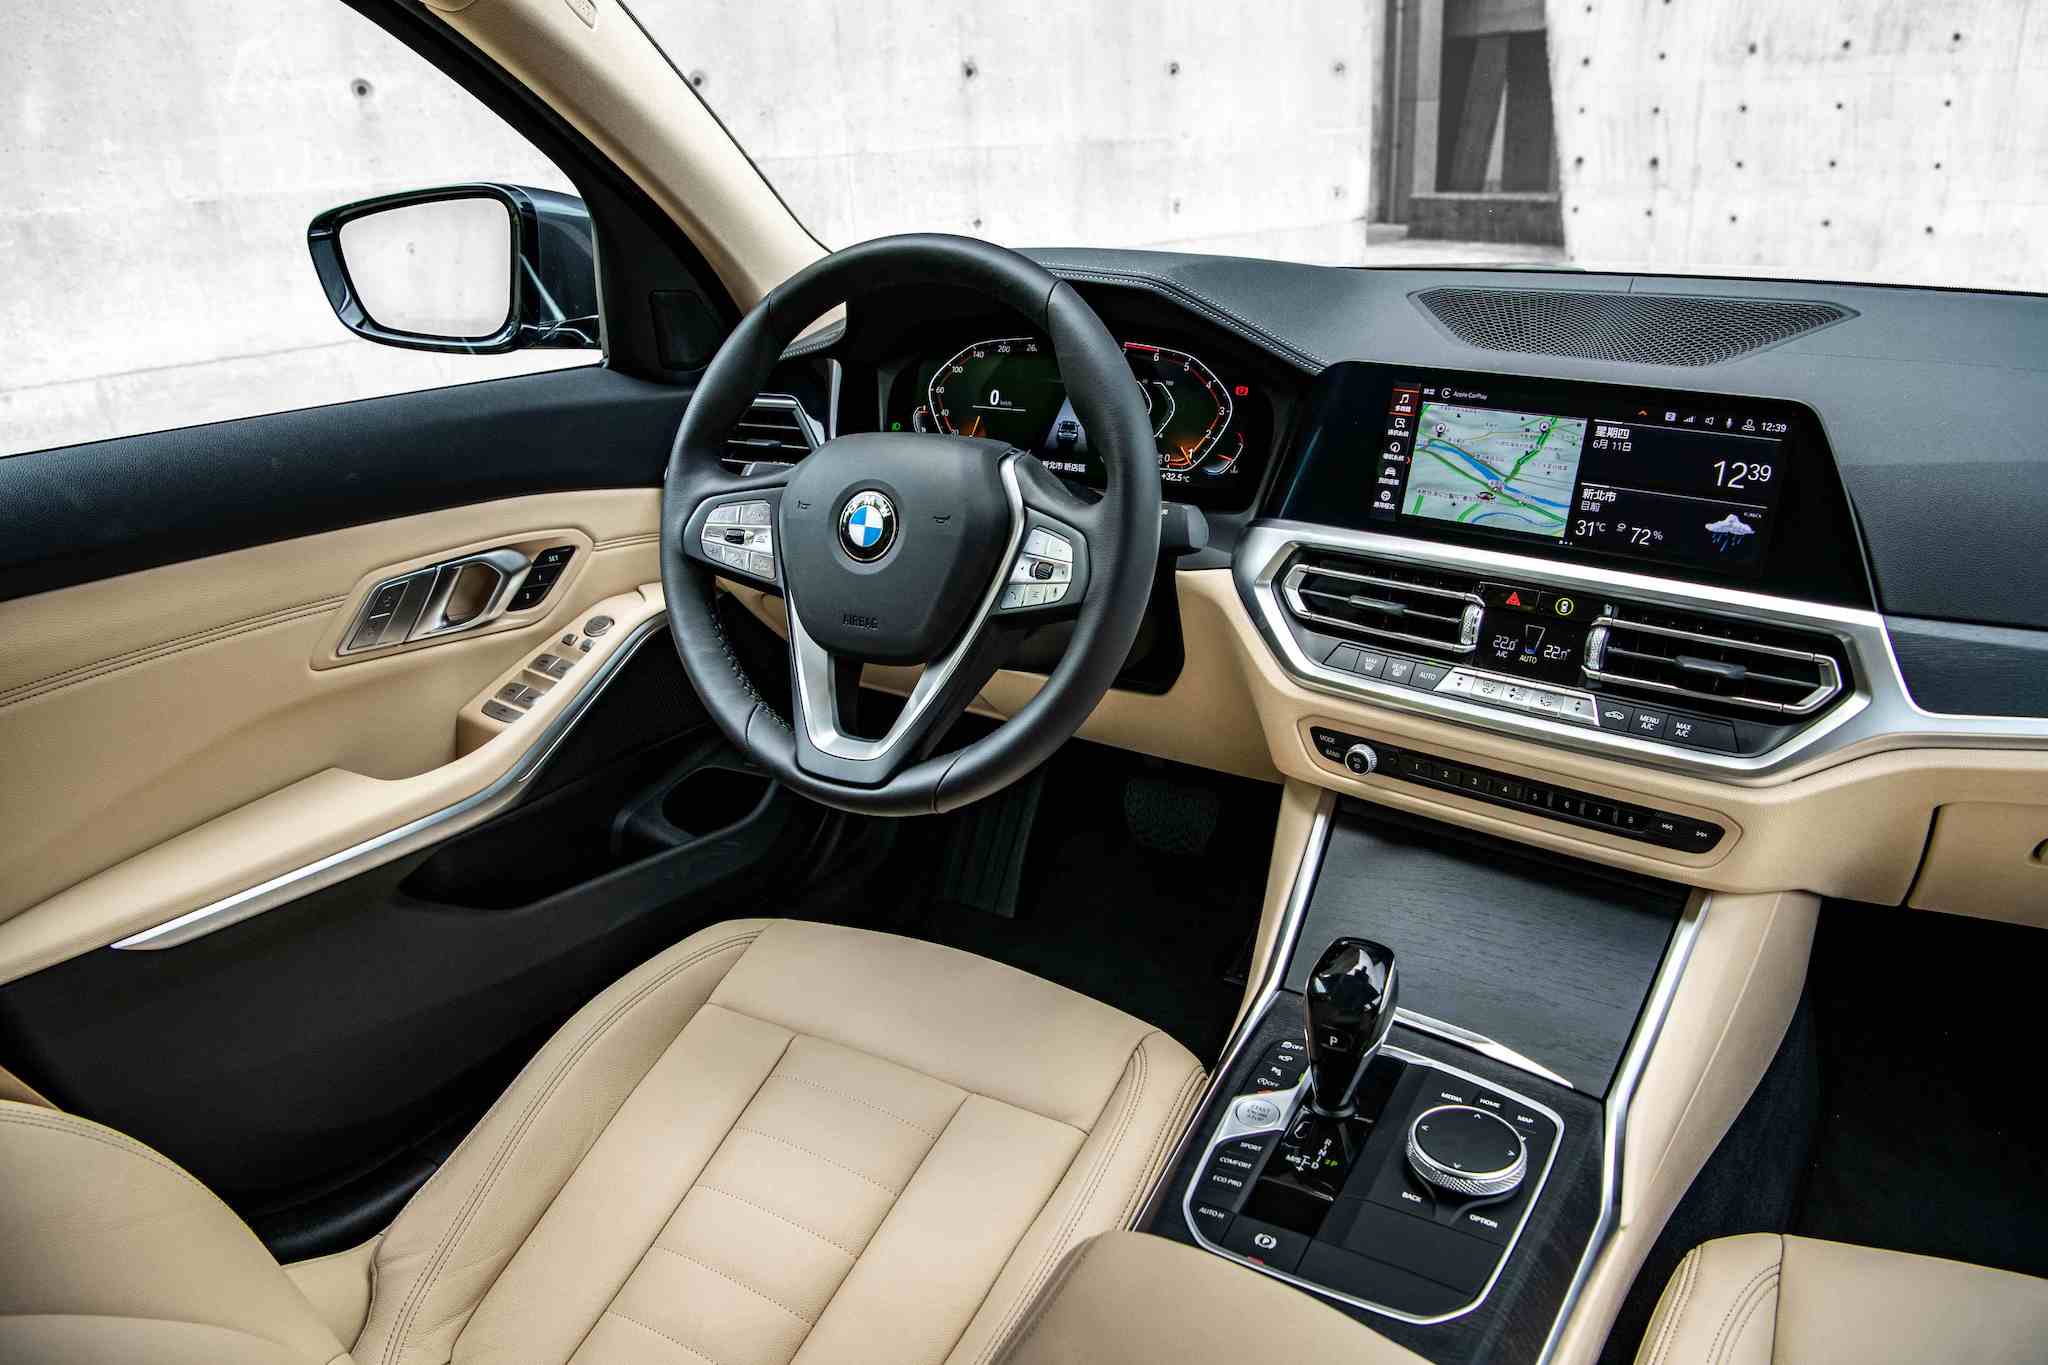 全新 2.0 BMW 318i 以 Vernasca 真皮內裝與全數位虛擬座艙打造，限量 100 台更升級360 度環景輔助攝影、遠端 3D 監控、HiFi 高傳真音響系統與電動行李廂啟閉。